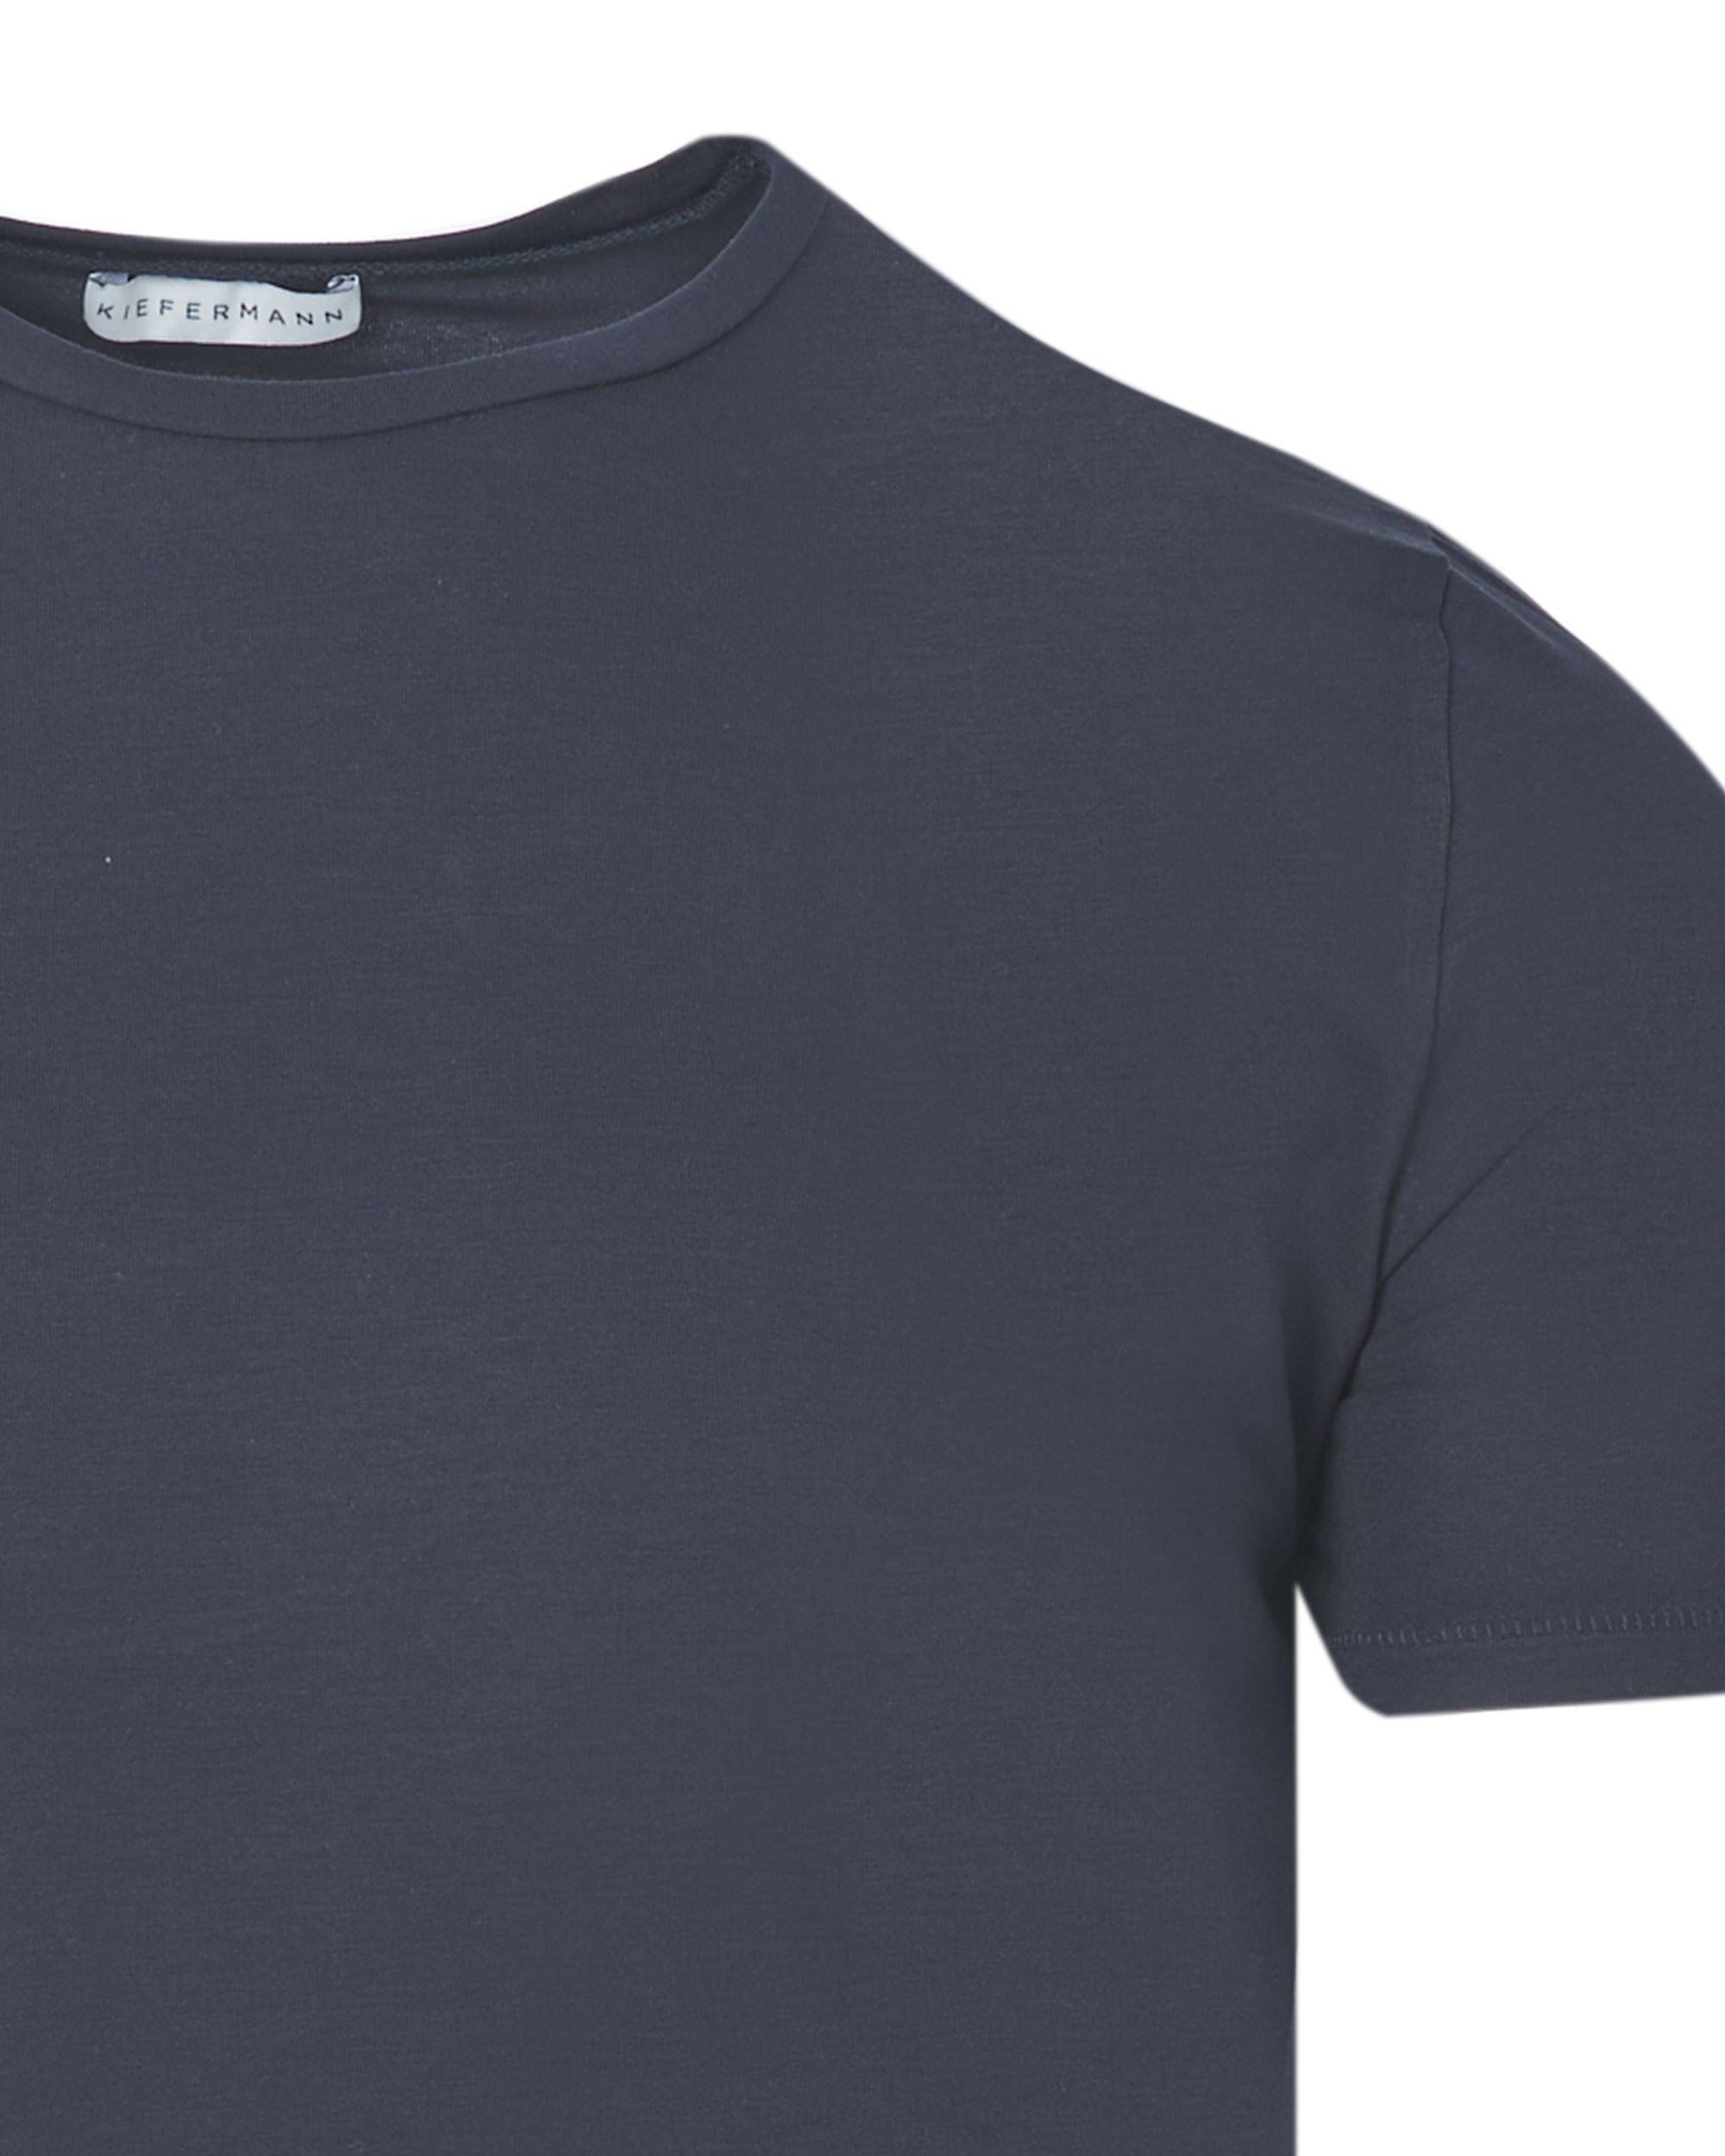 Kiefermann T-shirt KM Donker blauw 083553-001-L